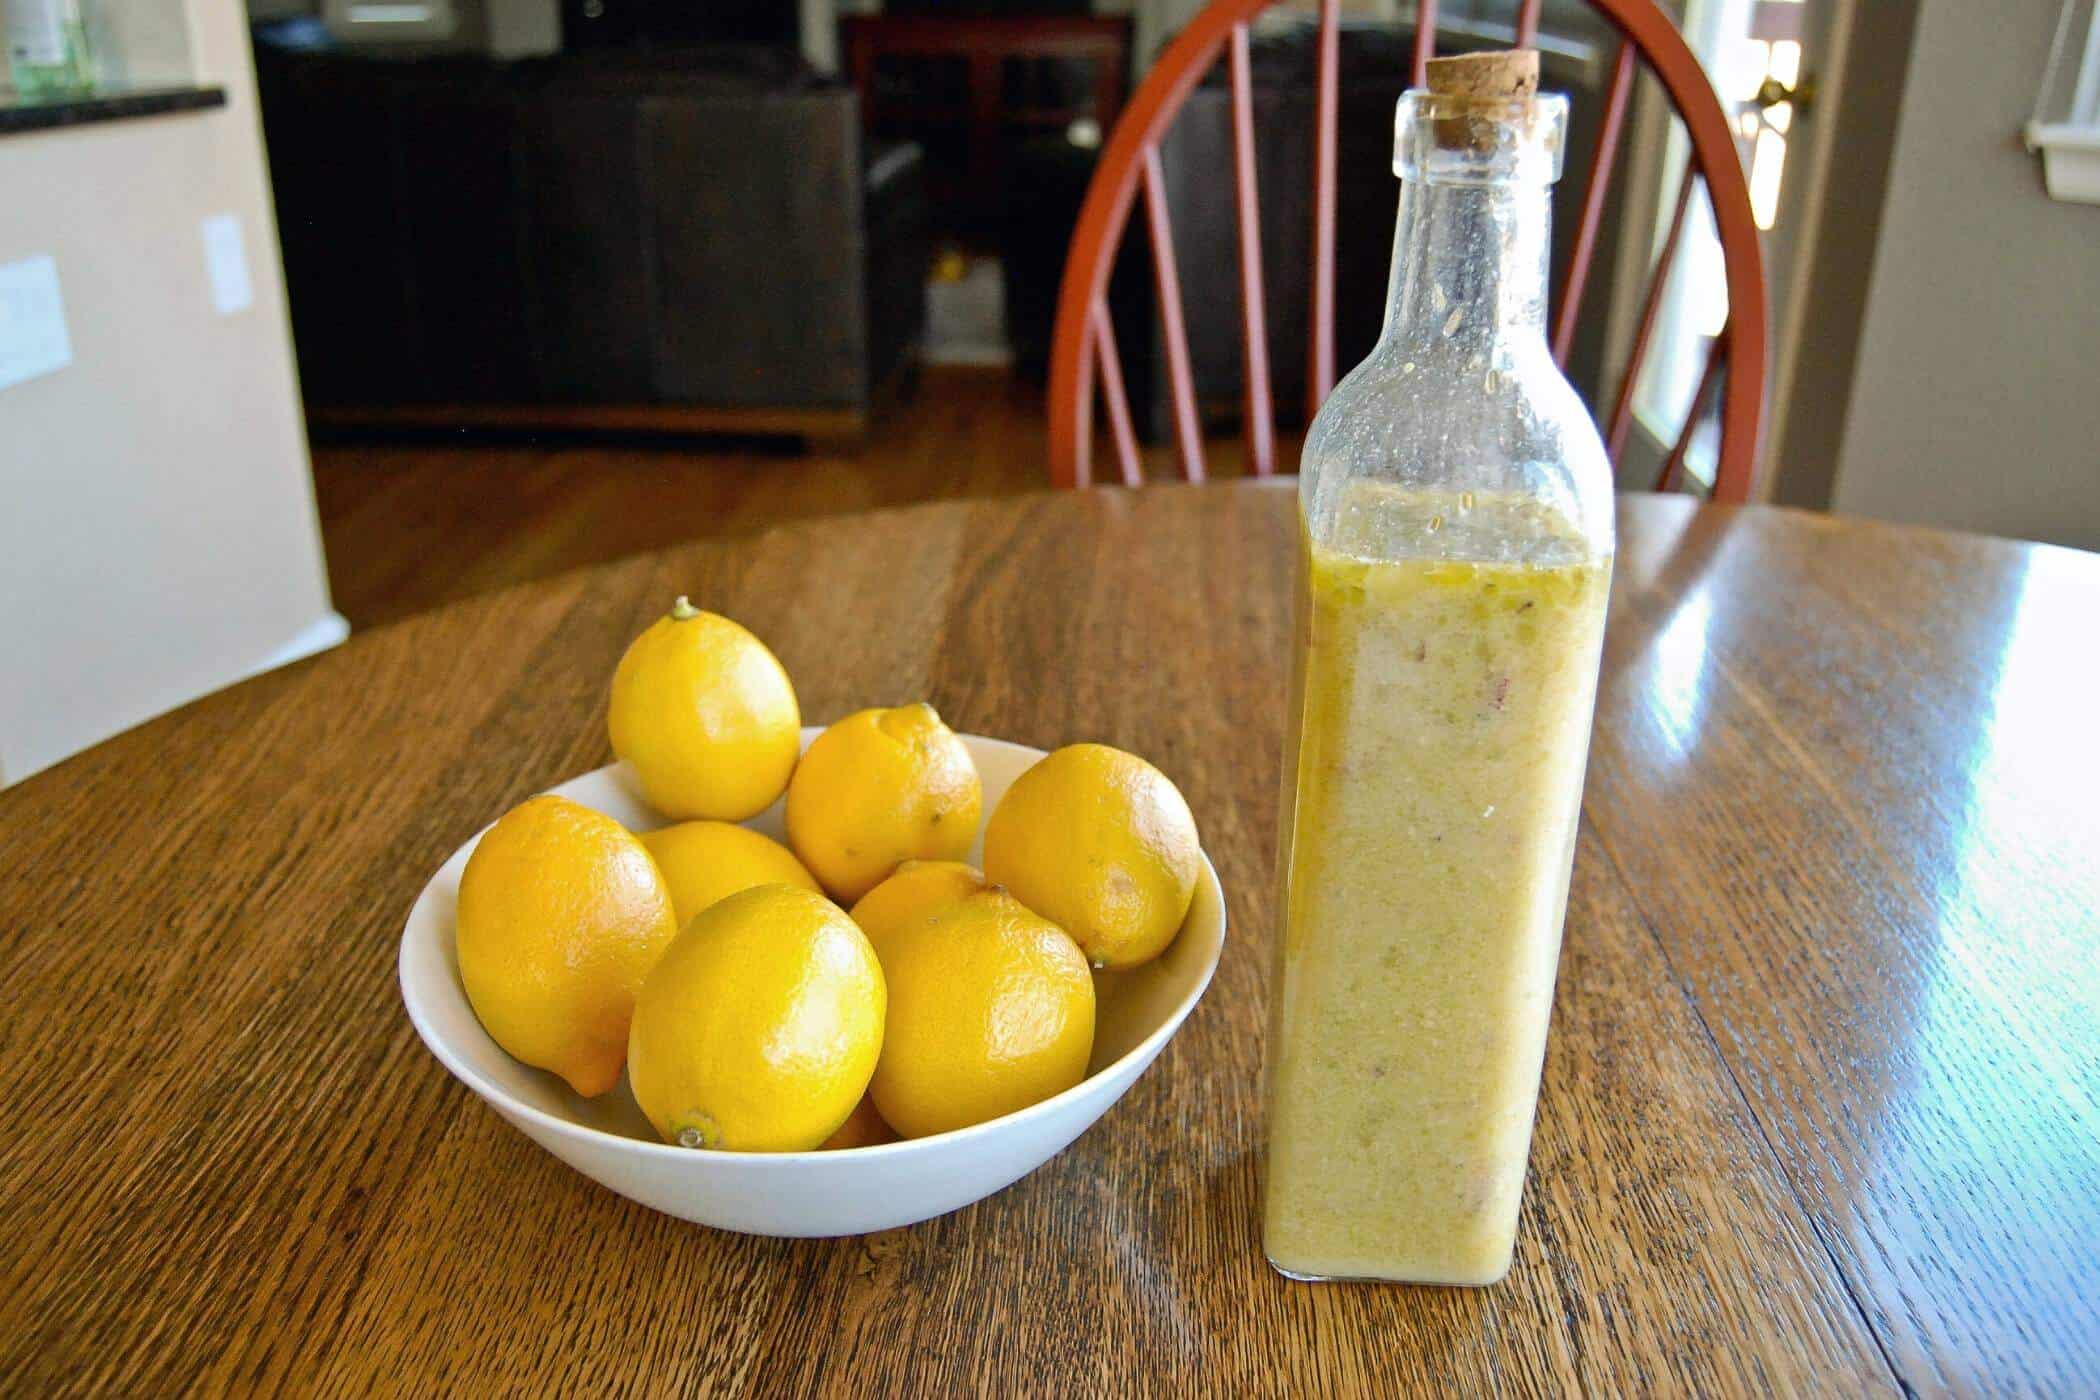 honey lemon vinaigrette dressing in jar next to bowl of lemons.